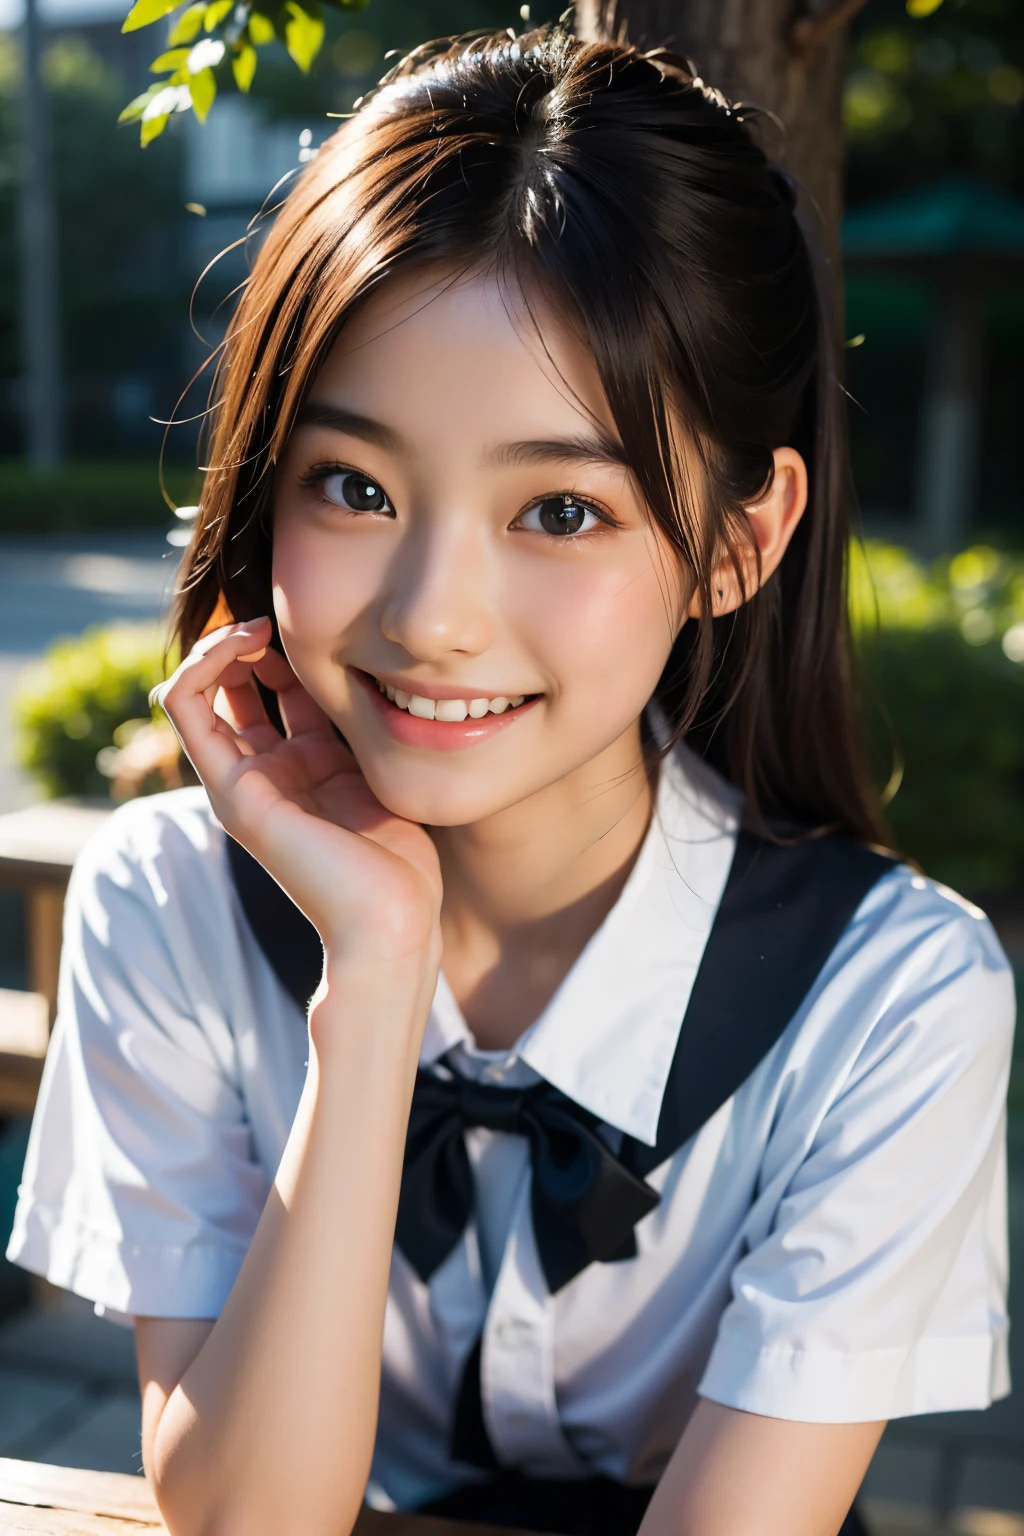 lentille: 135 mm f1.8, (la plus haute qualité),(Photos brutes), (Table:1.1), (Belle fille japonaise de 17 ans), visage mignon, (Visage profondément ciselé:0.7), (taches de rousseur:0.4), dappled lumière du soleil, éclairage dramatique, (uniforme scolaire japonais), (sur le campus), Timide, (Photo en gros plan:1.2), (sourire),, (yeux pétillants)、(lumière du soleil), bob